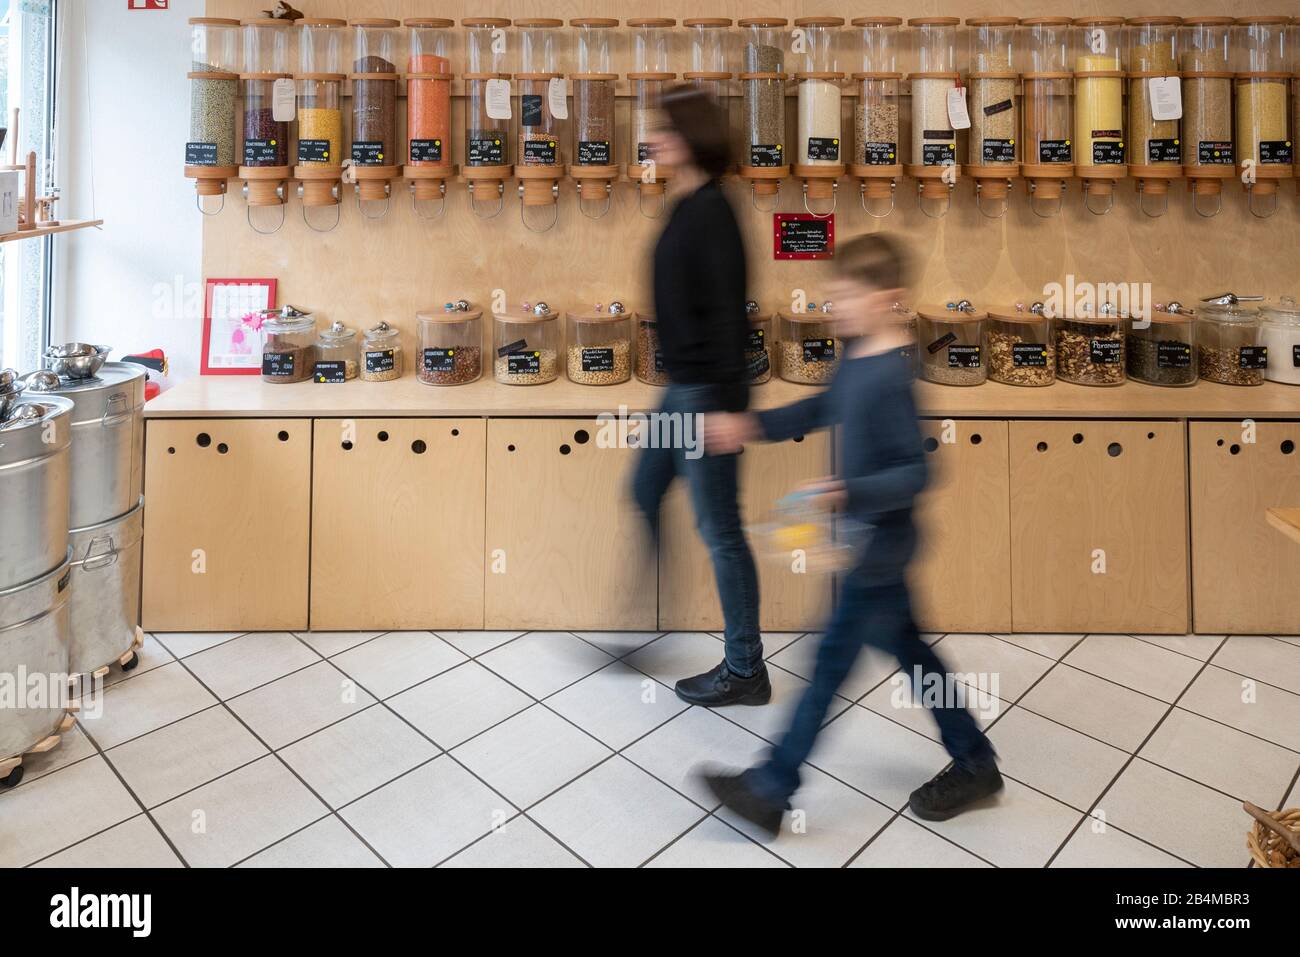 Eine Frau und ein Junge gehen an einem Regal mit Abfüllbehältern für Getreide vorbei, Szene aus einem Unverpacktladen. Stock Photo